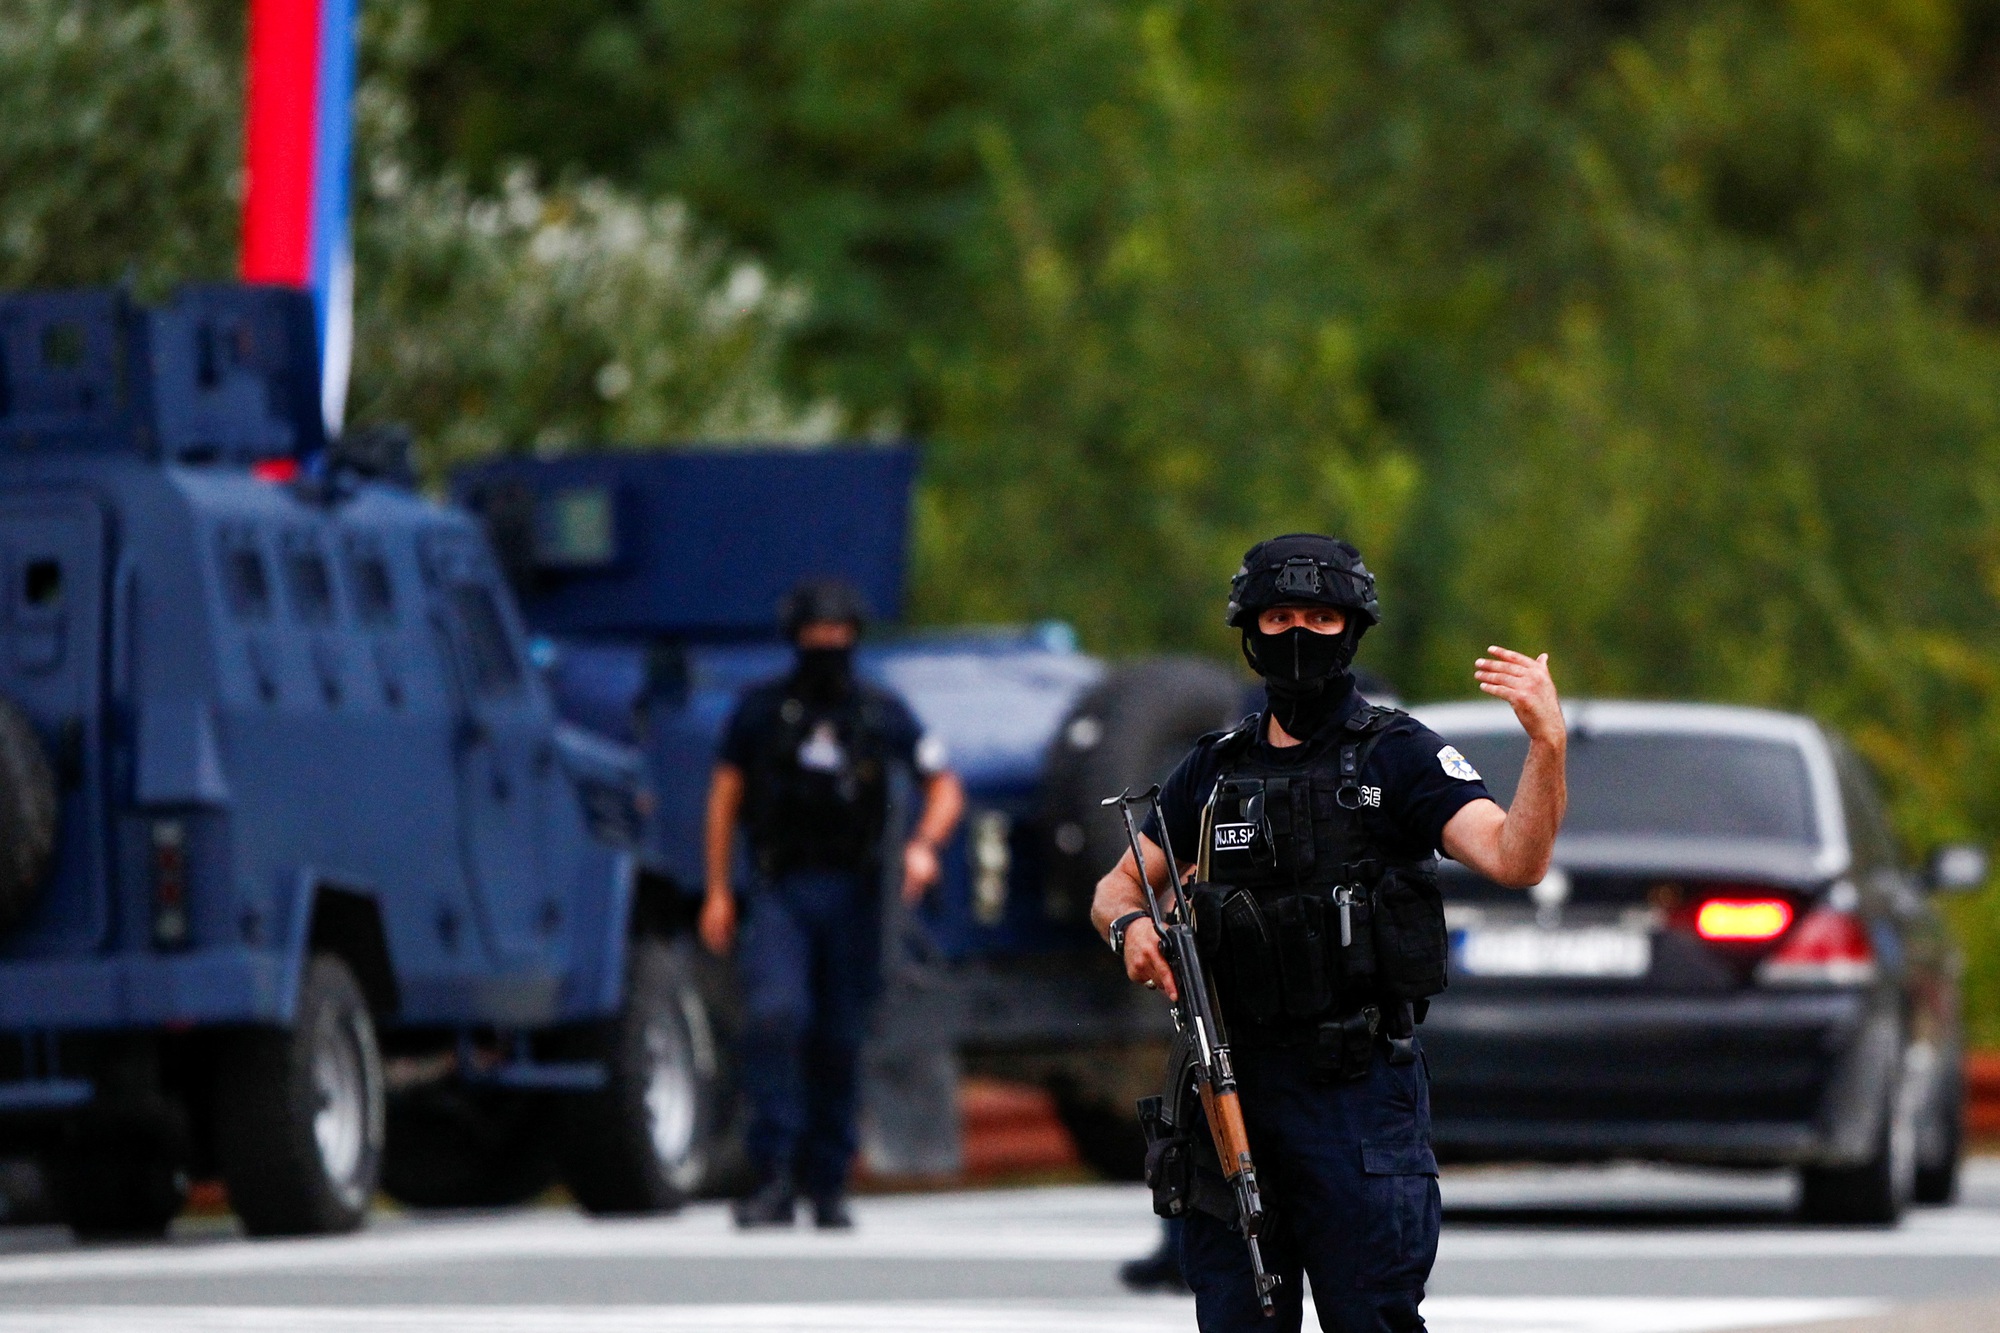 Căng thẳng leo thang ở Kosovo sau vụ tấn công cảnh sát  - Ảnh 2.